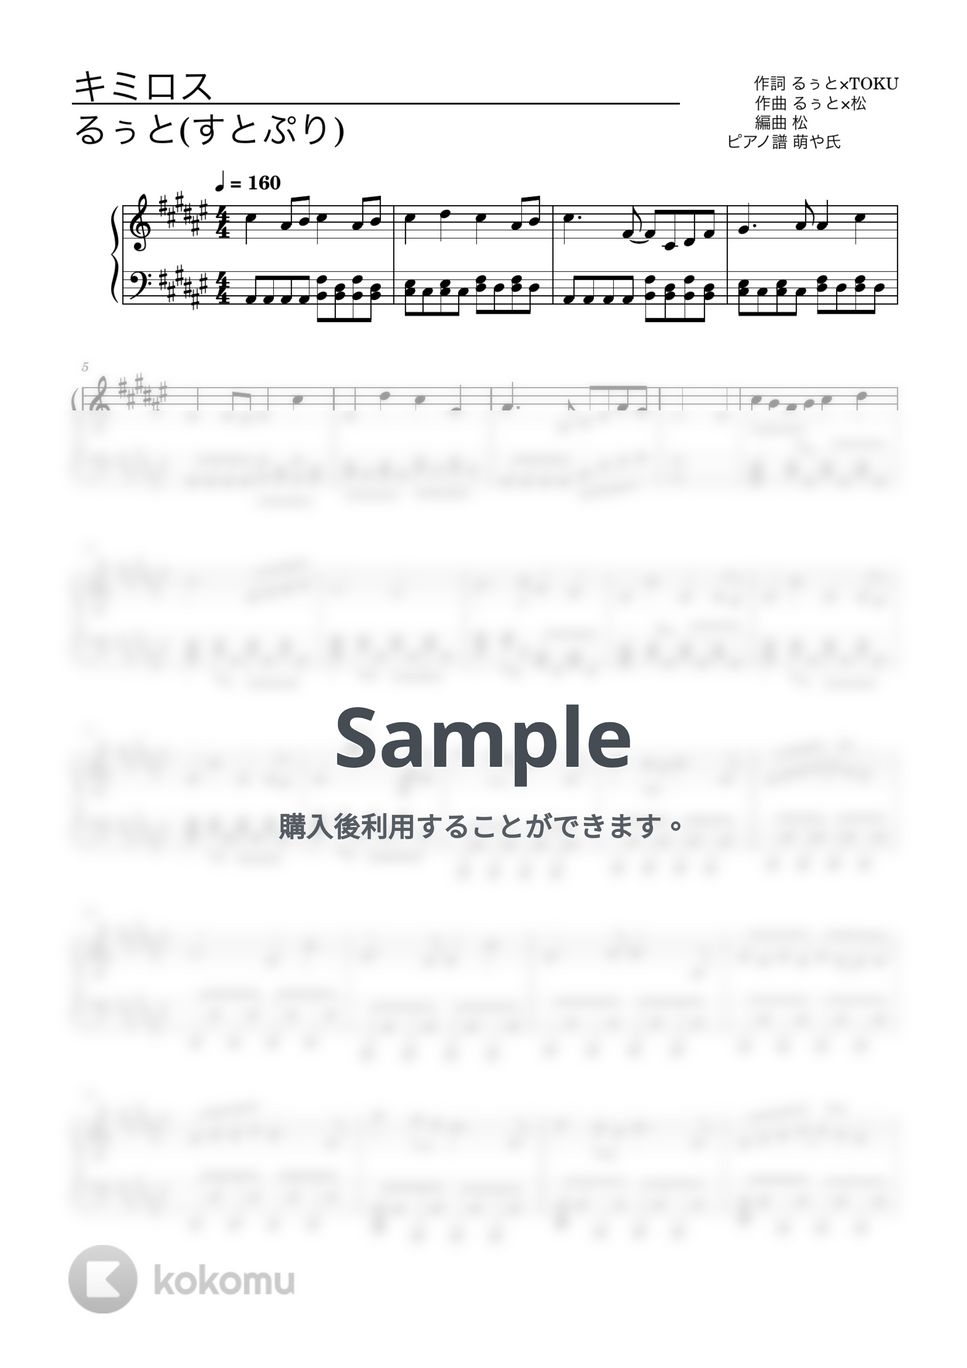 るぅと(すとぷり) - キミロス (ピアノソロ譜) by 萌や氏